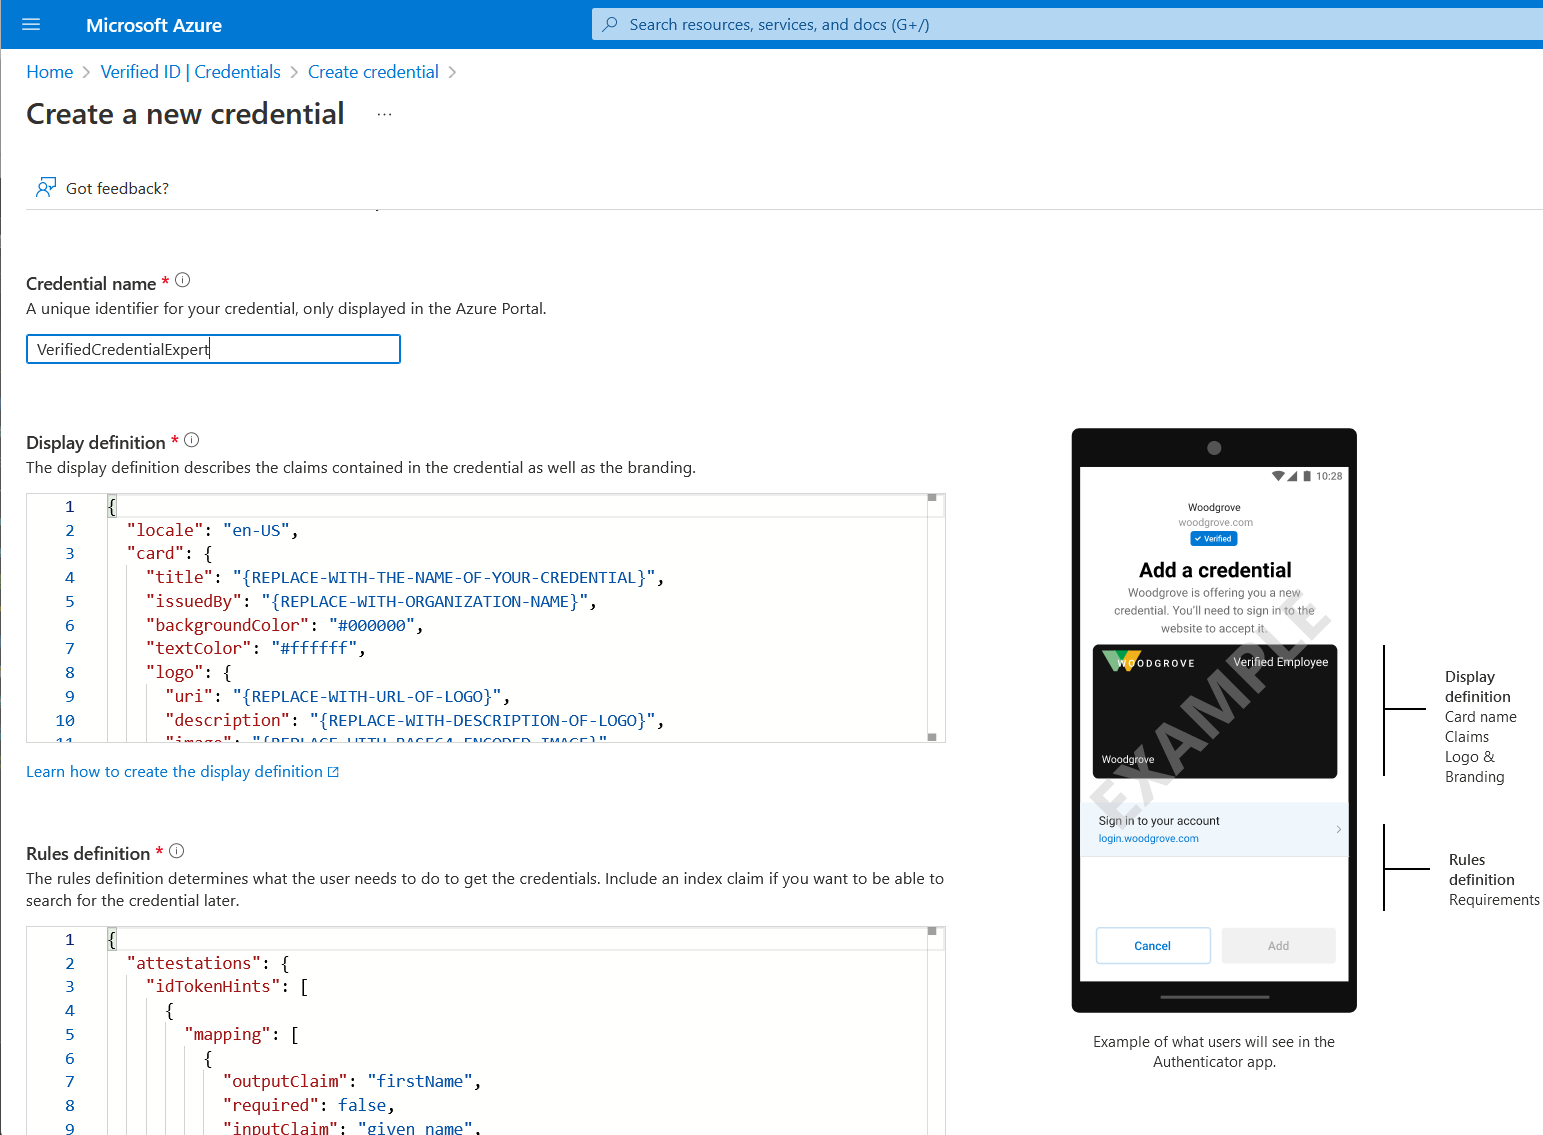 Снимок экрана: страница создания новых учетных данных, отображающая примеры JSON для правил и отображаемых файлов.